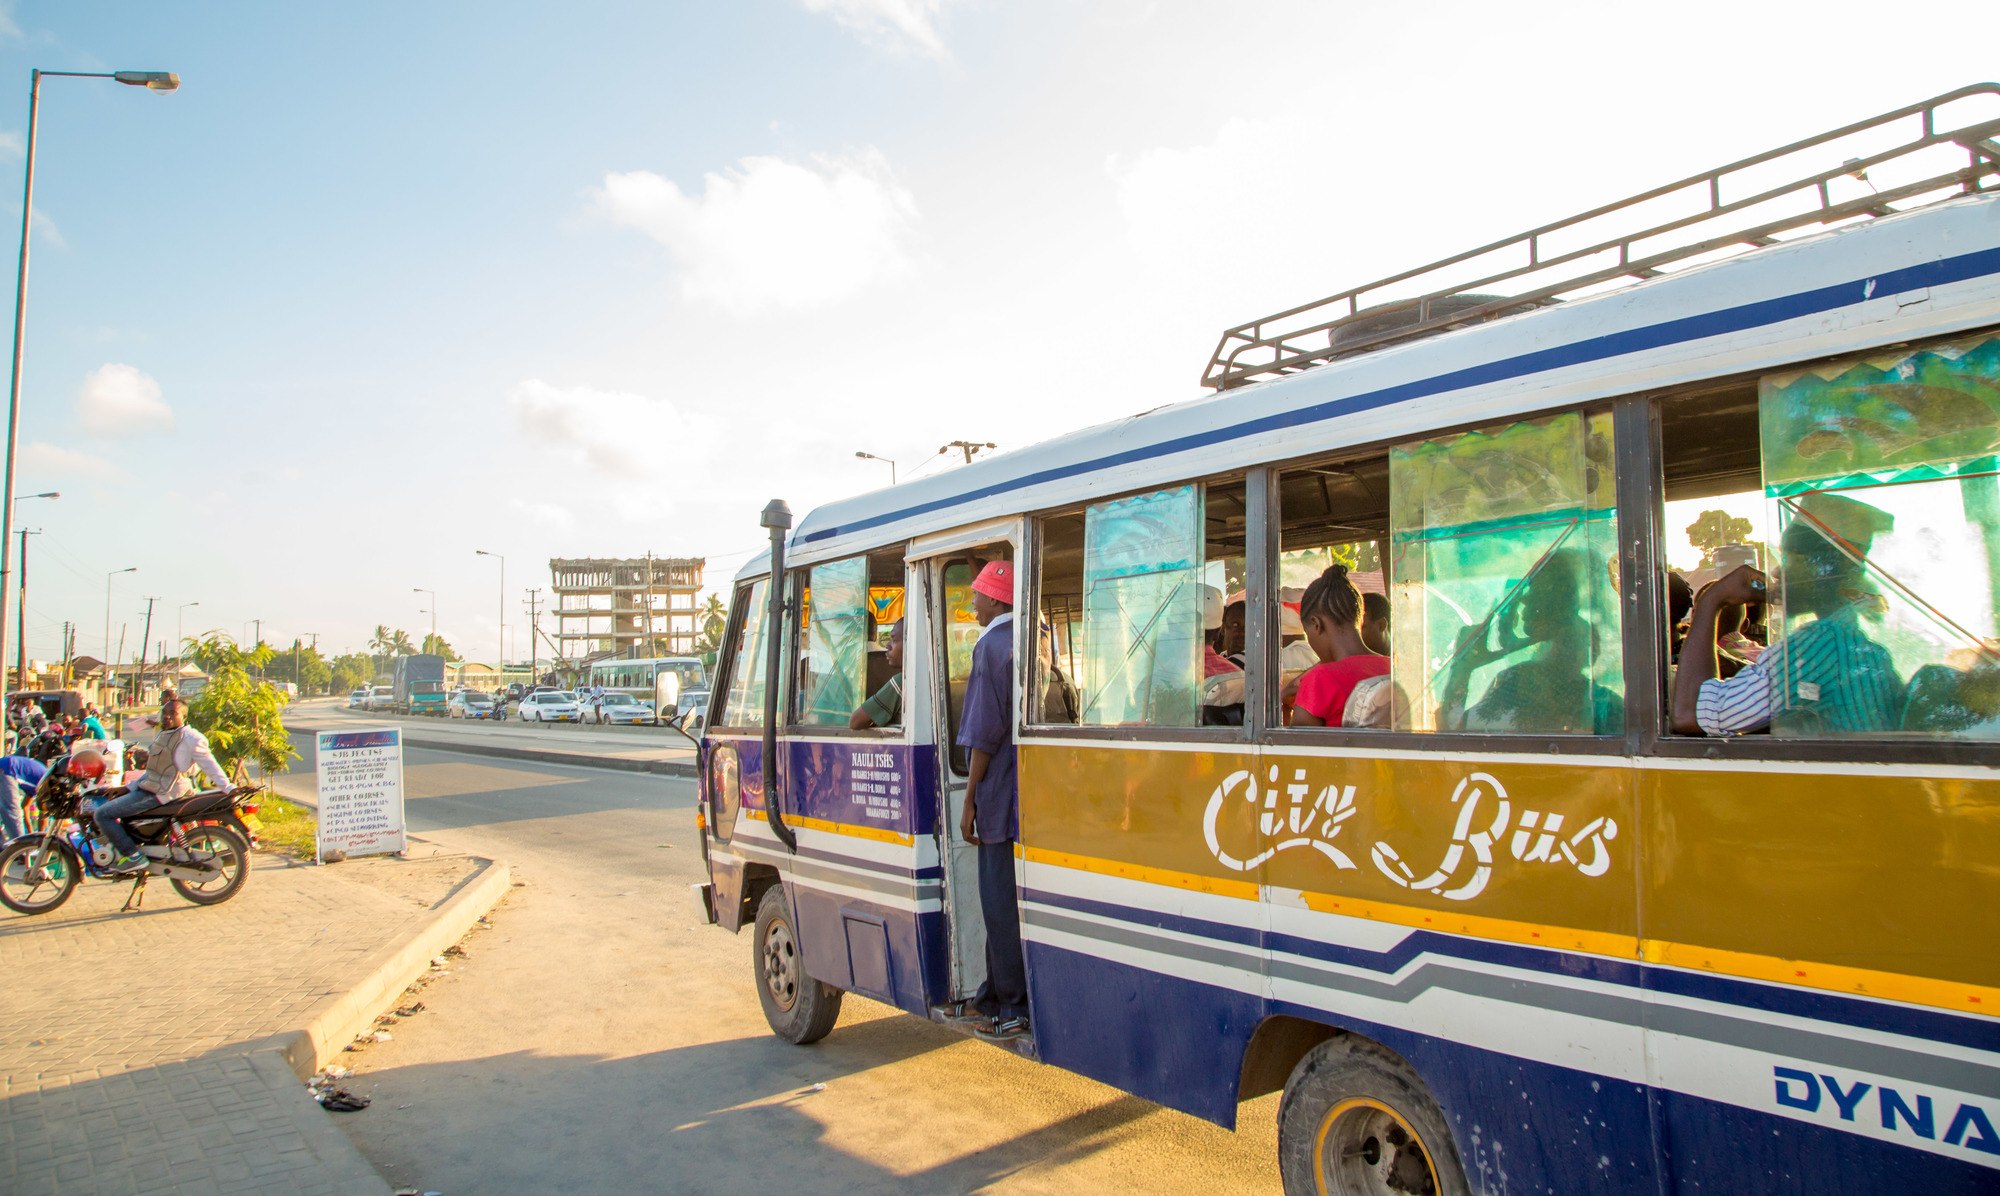 Image of bus in Dar Es Salaam